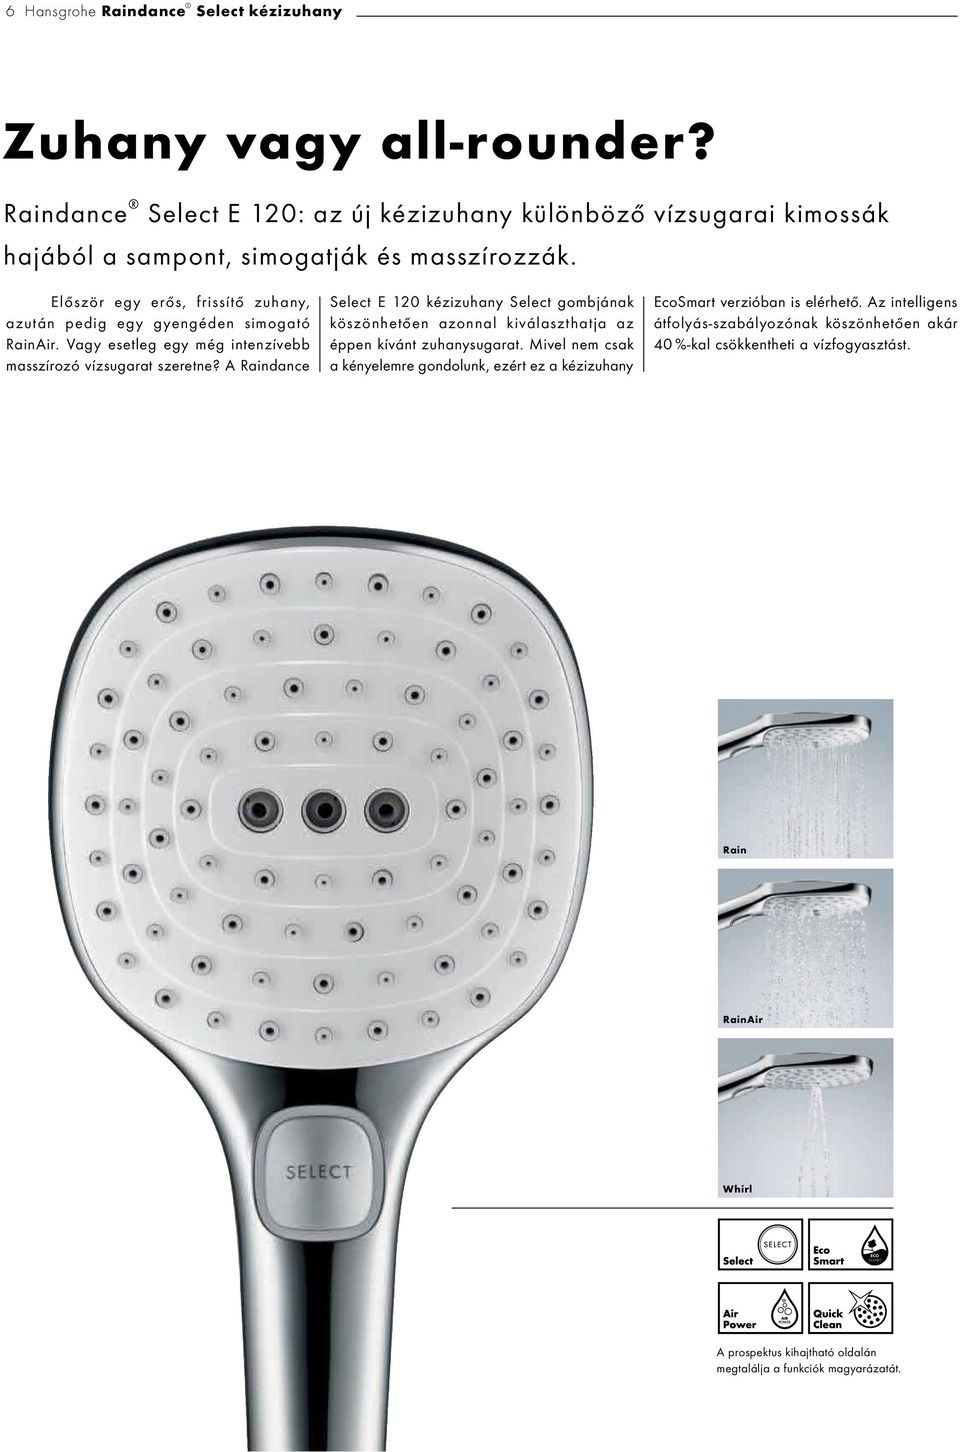 A Raindance Select E 120 kézizuhany Select gombjának köszönhetően azonnal kiválaszthatja az éppen kívánt zuhanysugarat.